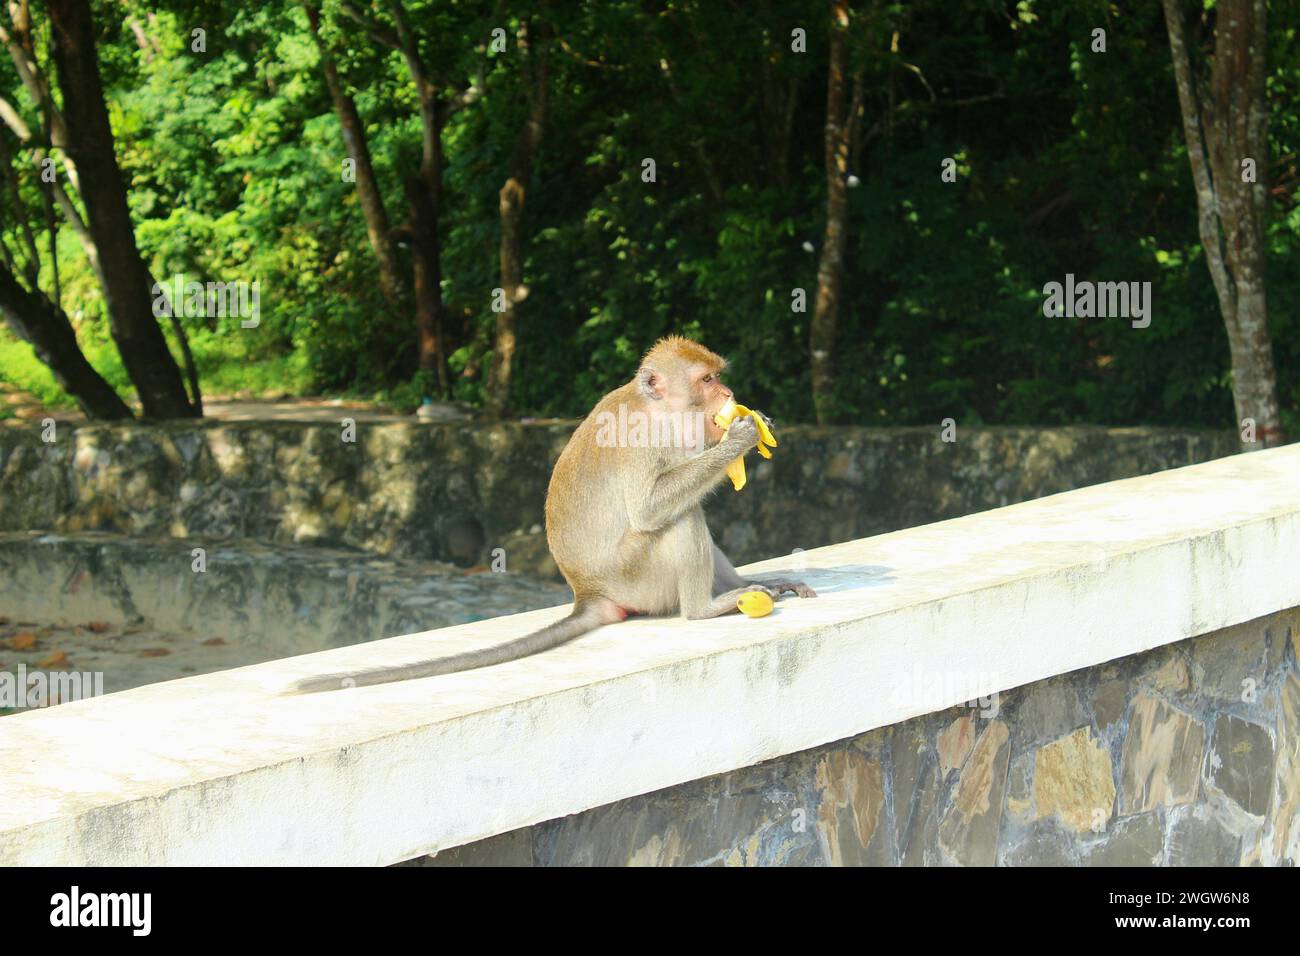 Singe sauvage mangeant une banane dehors Banque D'Images